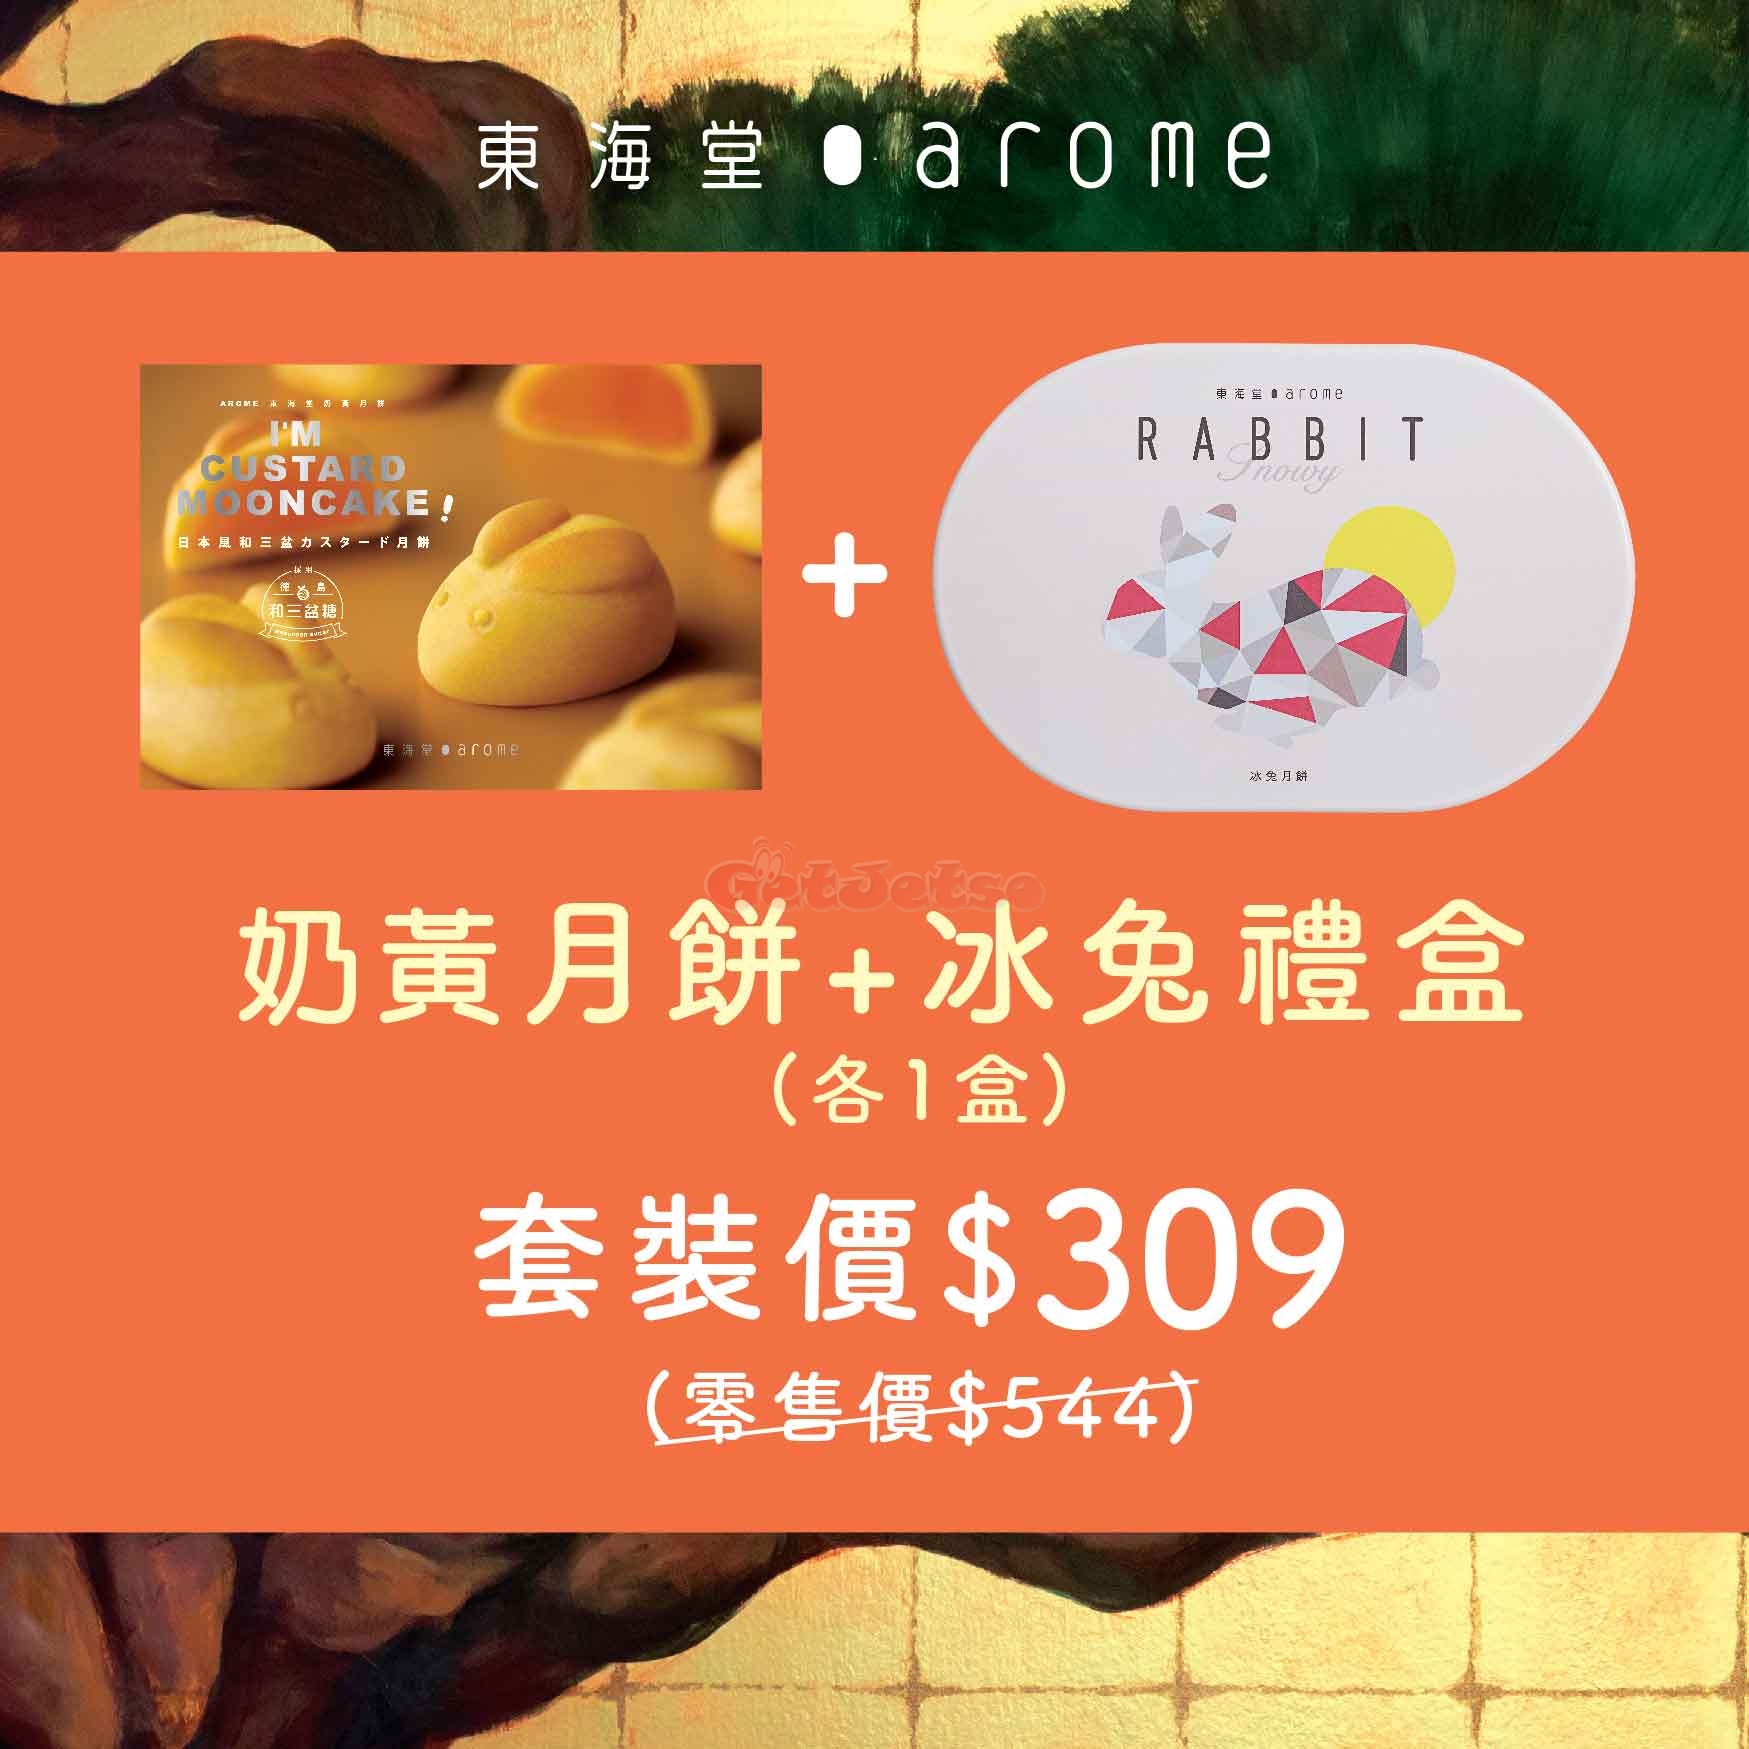 東海堂官網低至4折月餅套裝預購優惠(20年6月30日起)圖片2